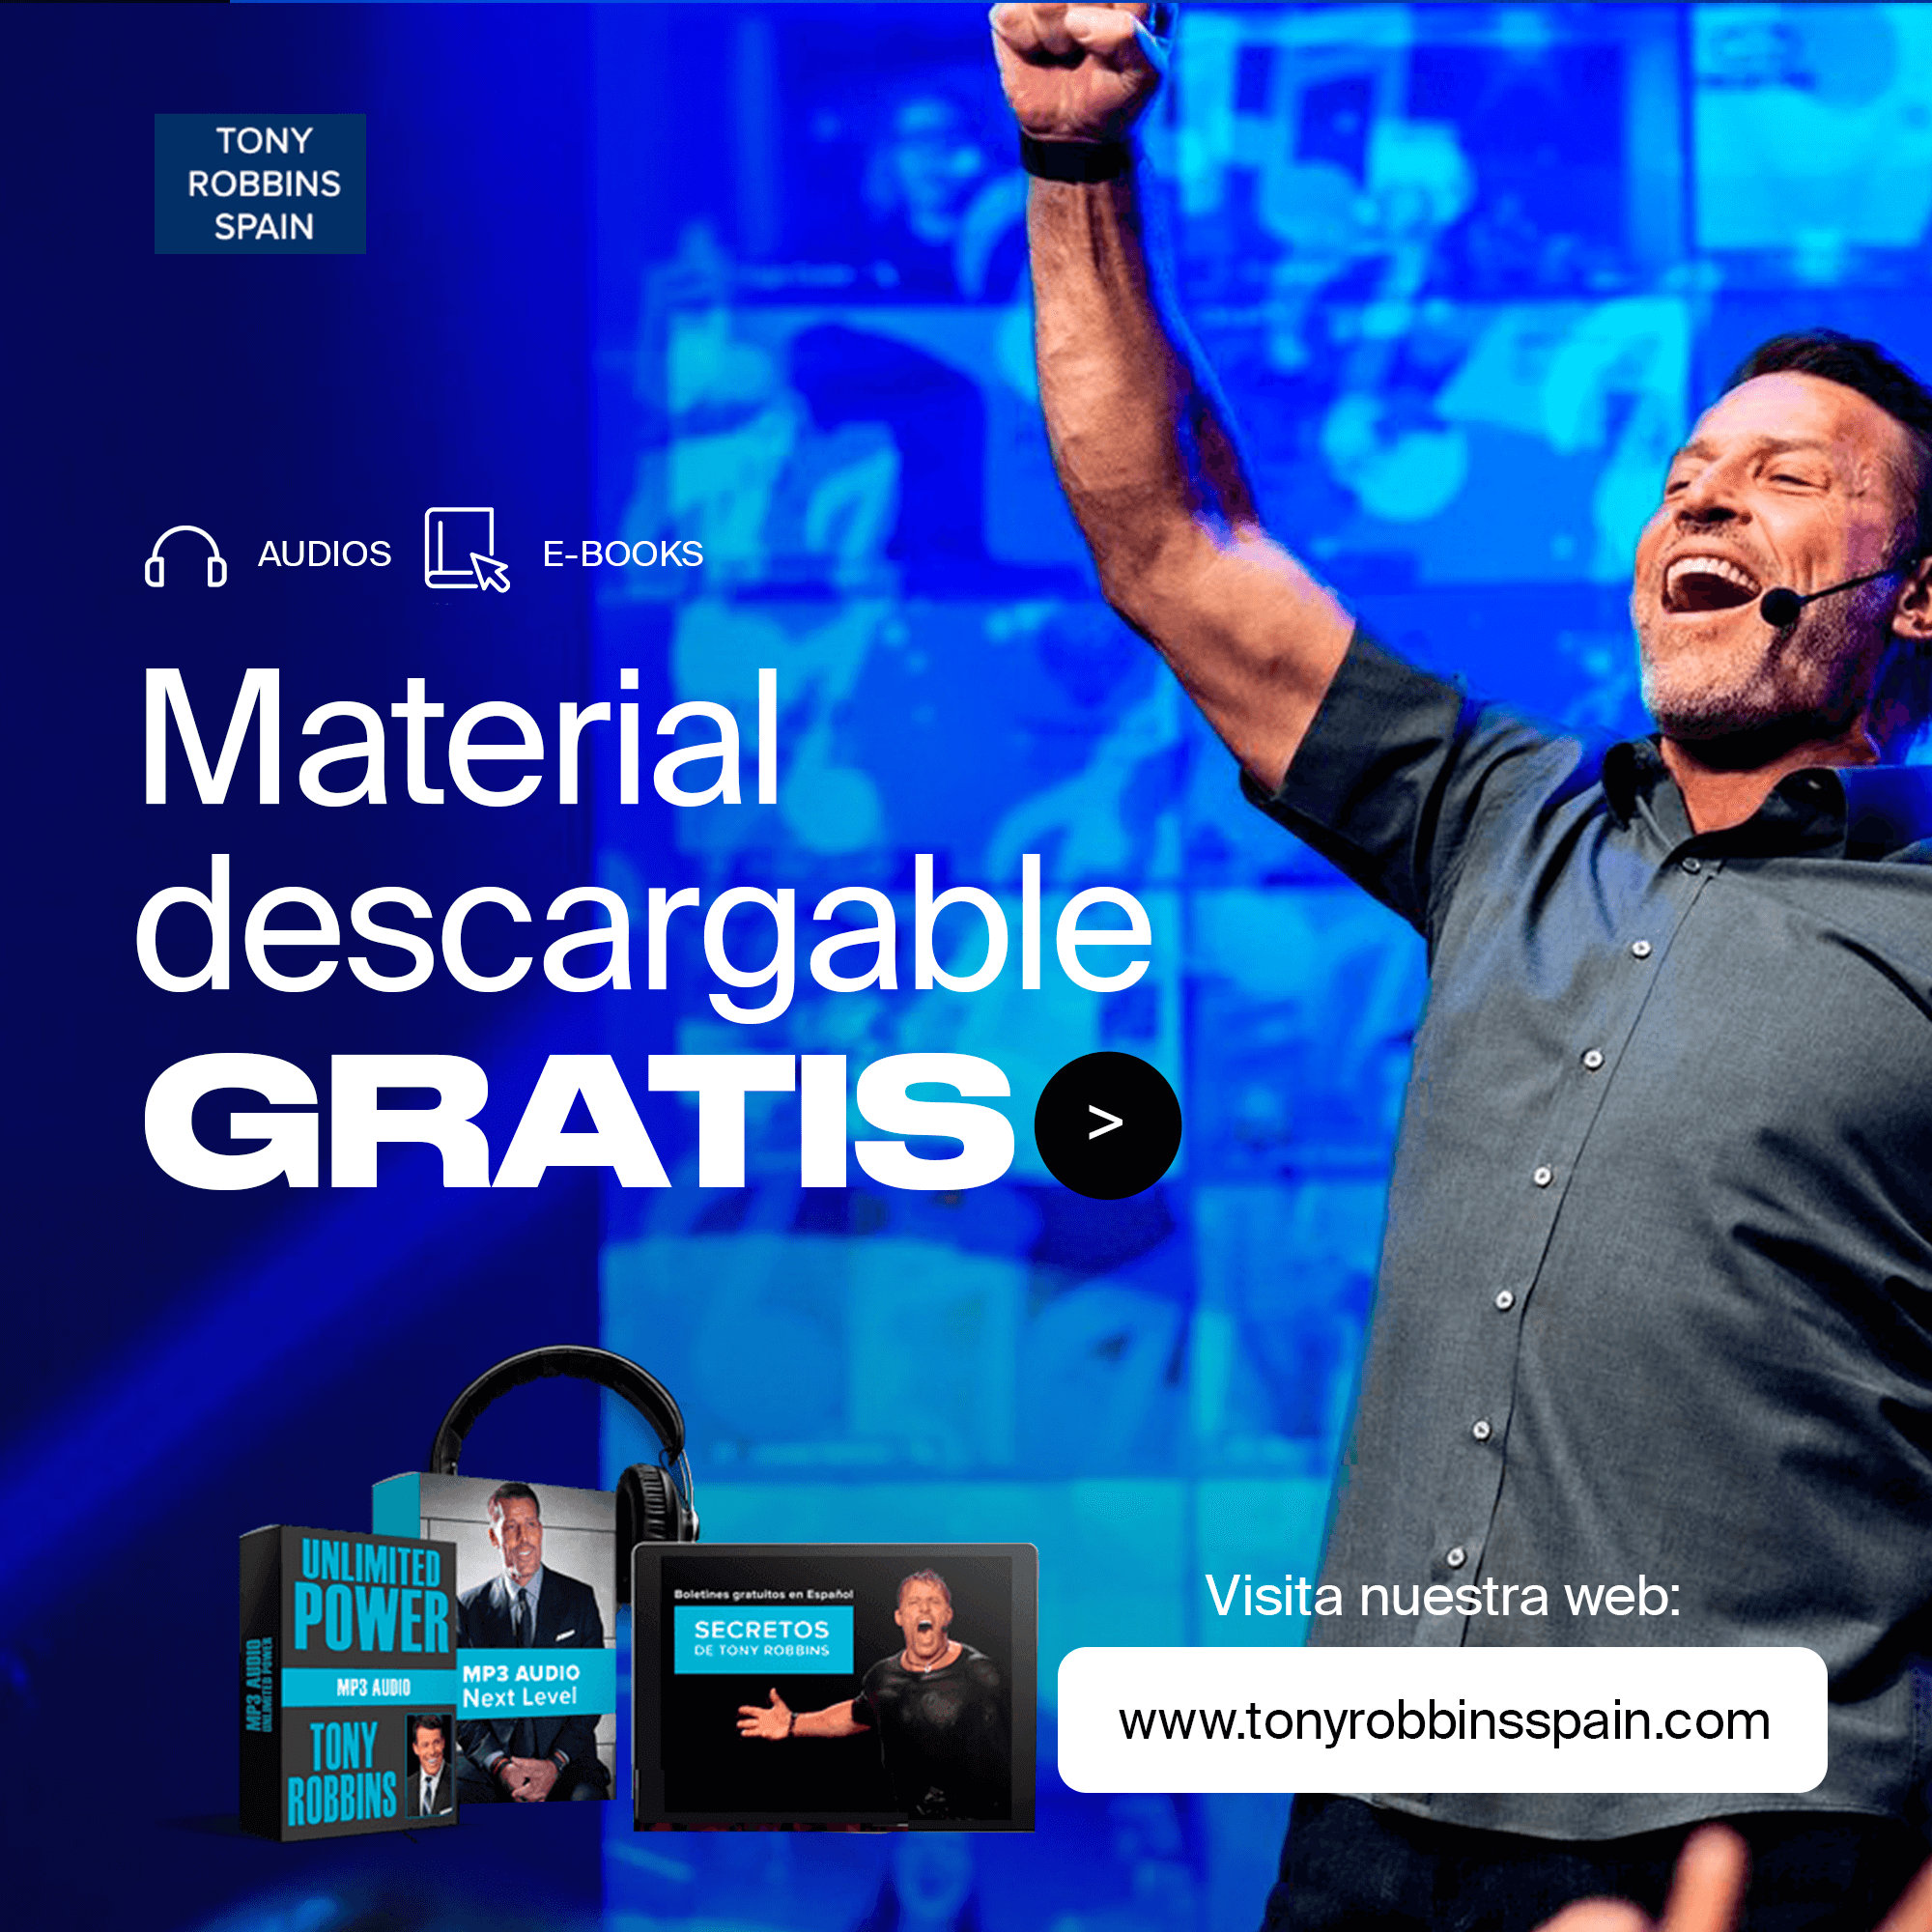 Material descarga gratis regalo Tony Robbins en español Tony Robbins Spain